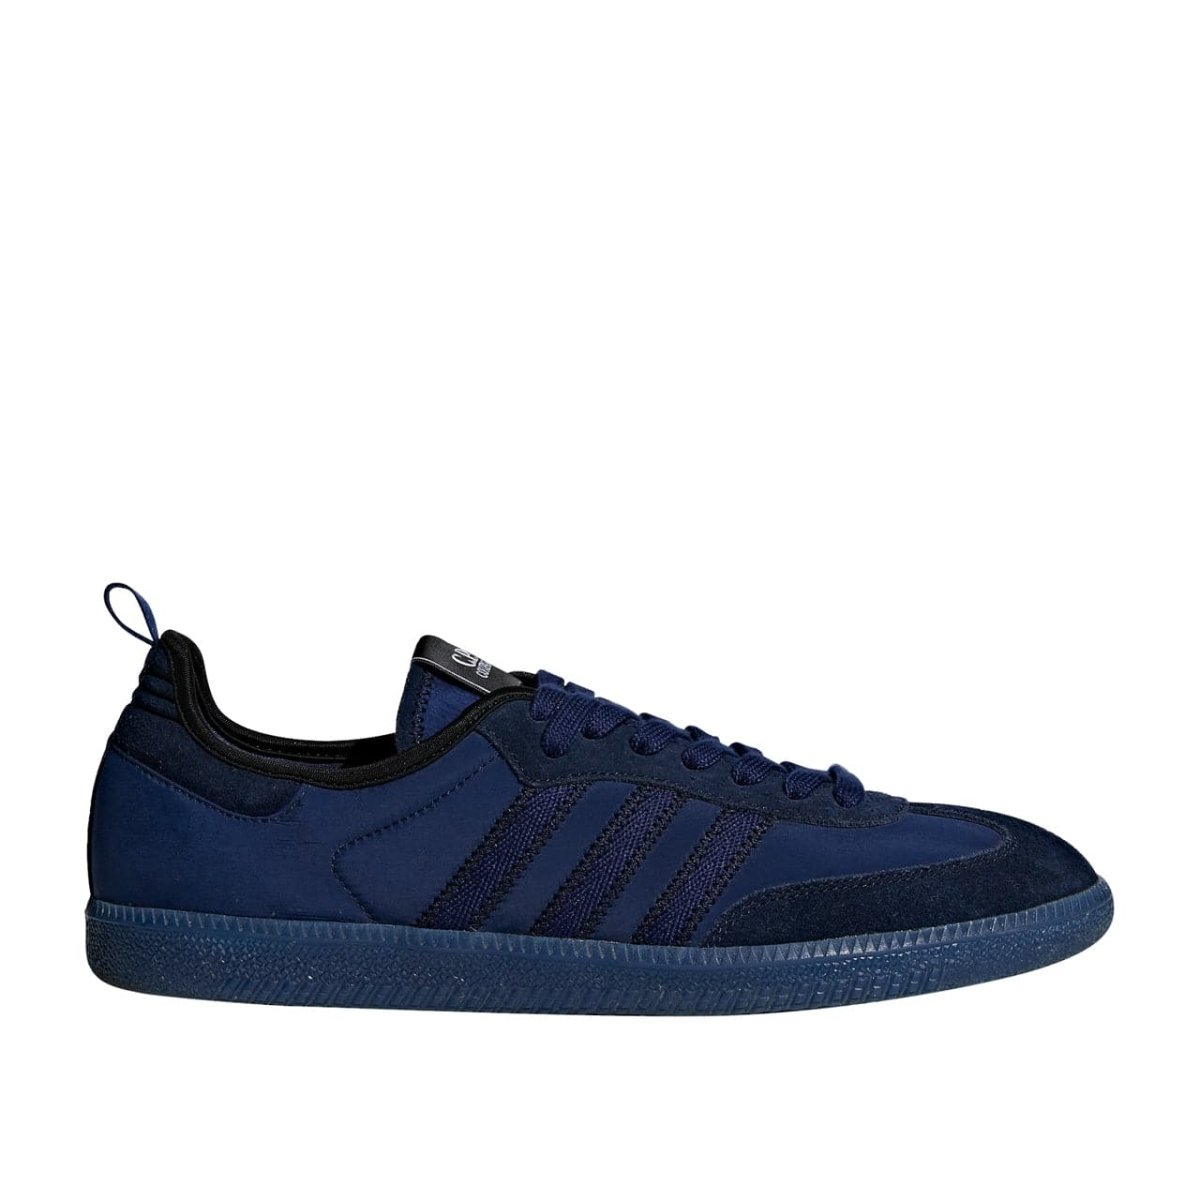 adidas by C.P. Company Samba (Blau)  - Allike Store